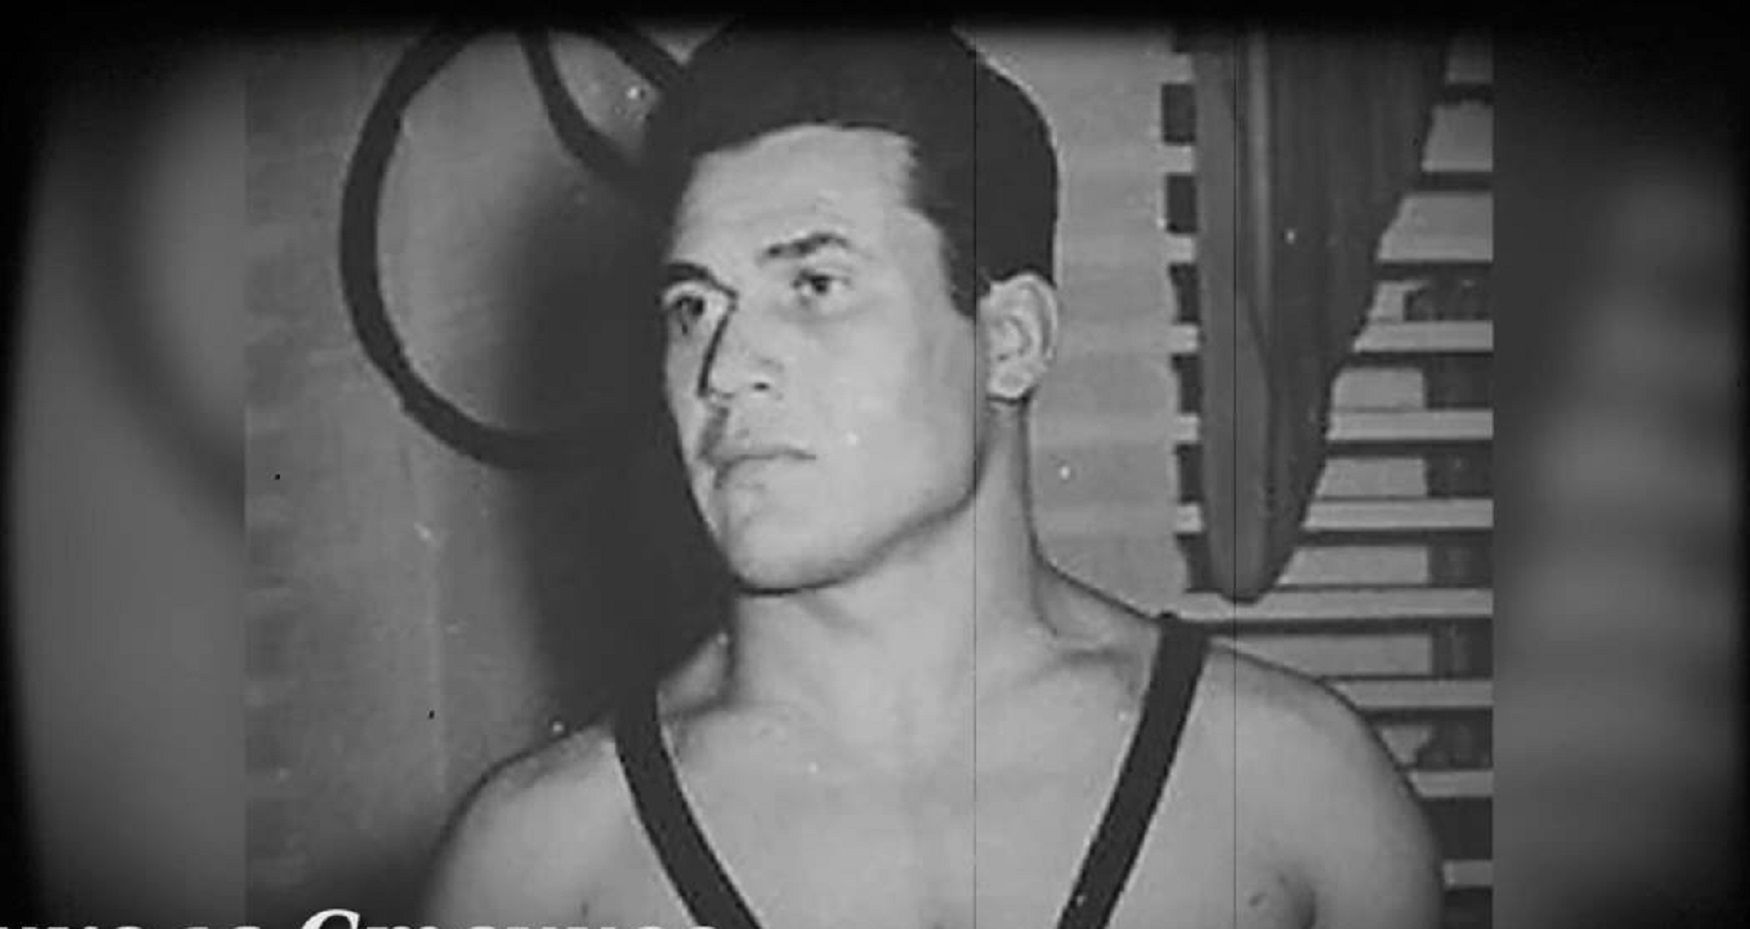 Никола Станчев (1930-2009) Той е първият ни олимпийски шампион. Печели титлата в борбата свободен стил на игрите в Мелбърн през 1956-а. Отива си в началото на десетилетието. Открит е негов паметник в родното му село Твърдица.